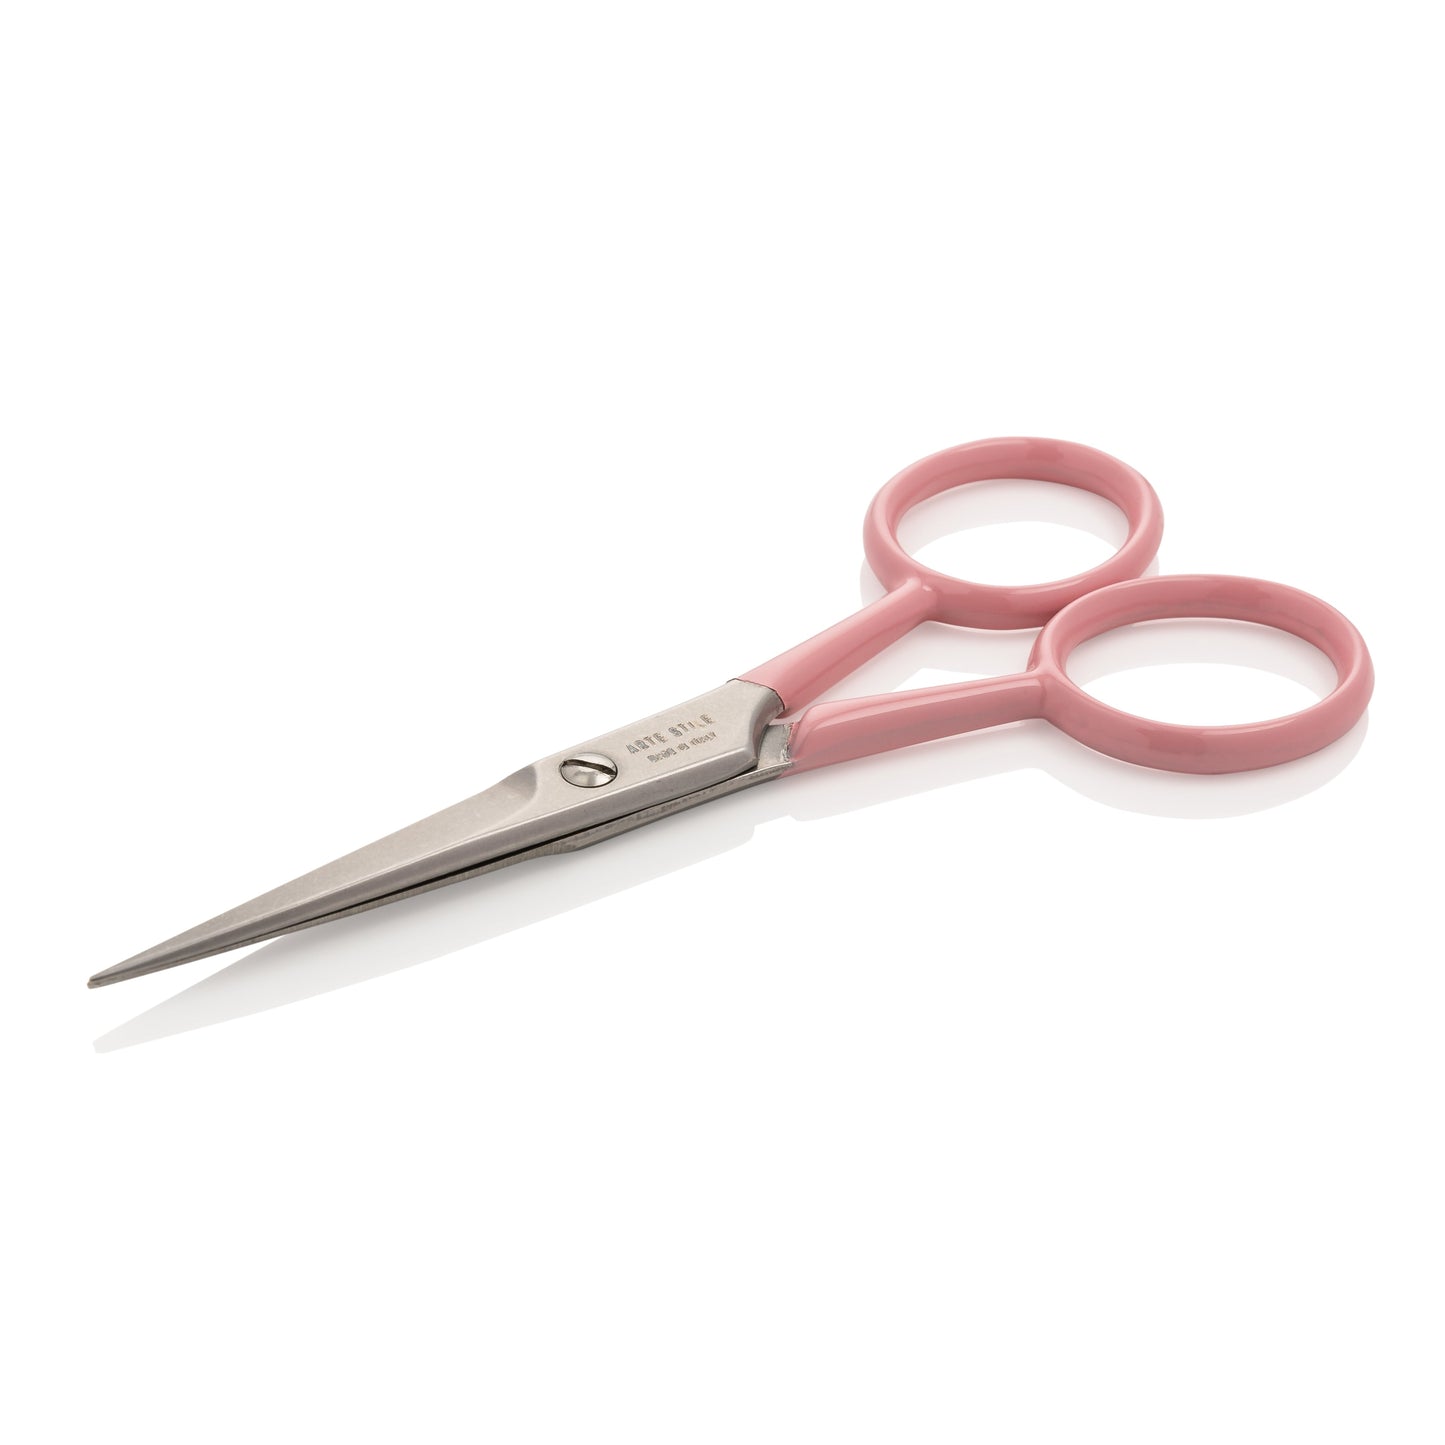 Point Tip Tweezers + Brow Scissors Kit in Rose